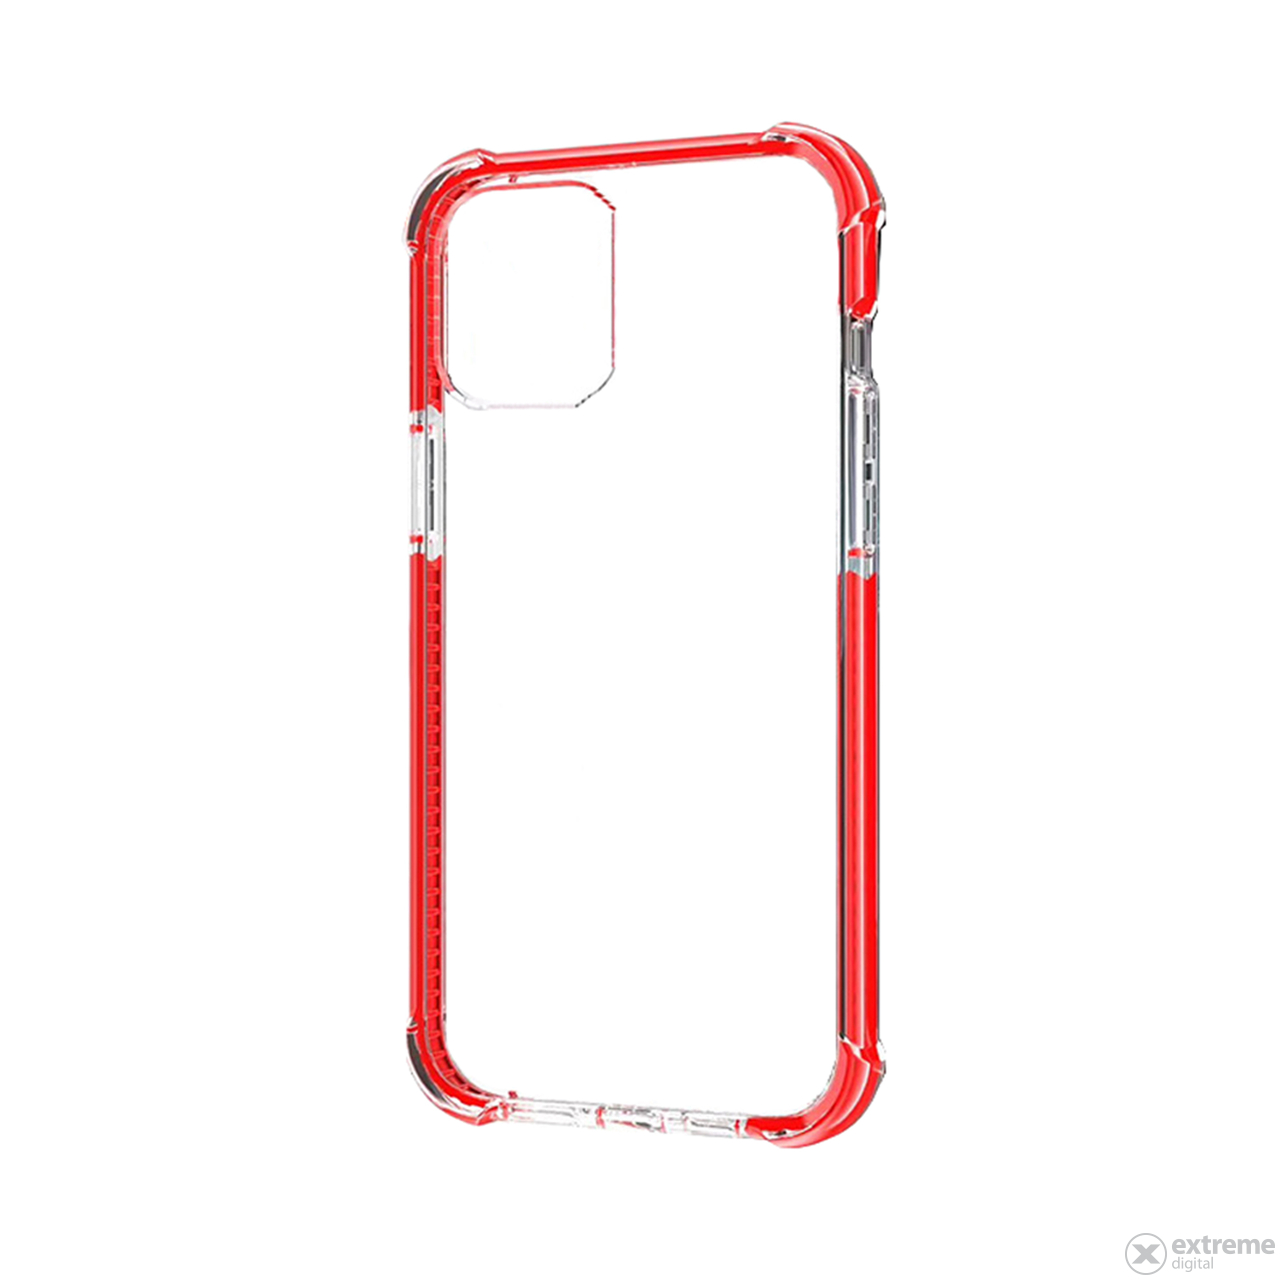 Zaščitni ovitek Cover Hard X-Fitted Defender Air za iPhone 12 Pro Max, rdeč